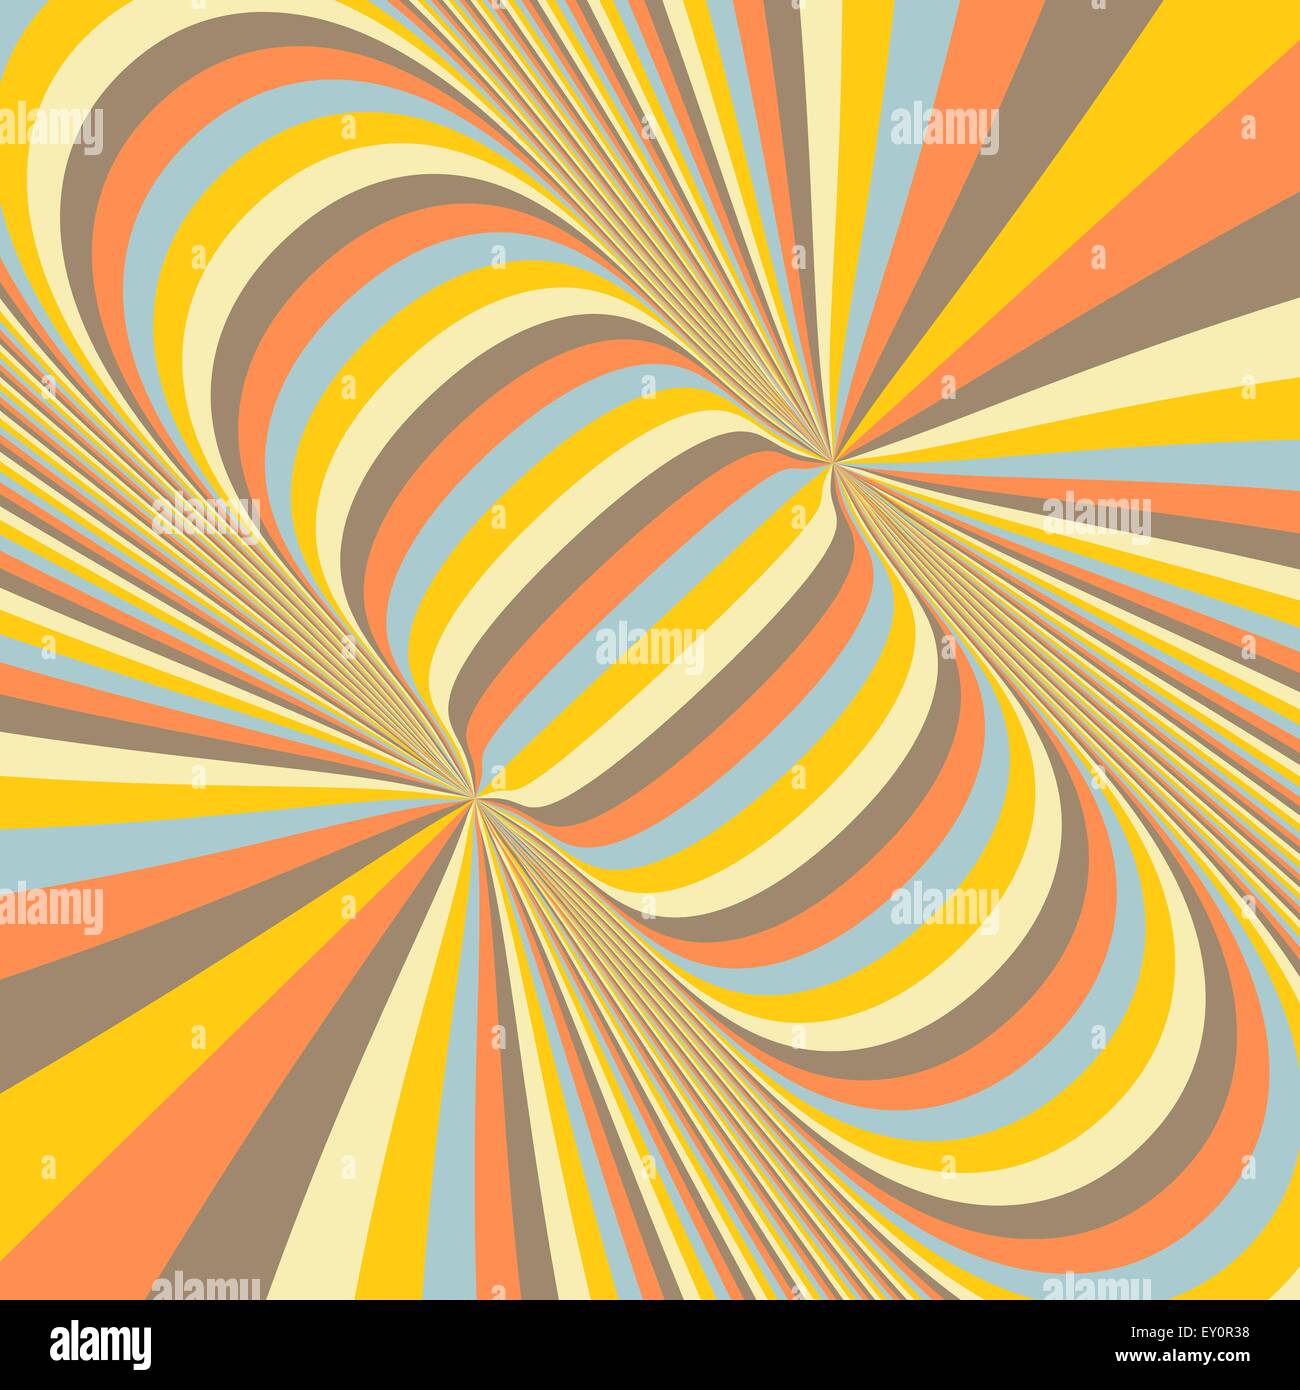 Abstract 3d sfondo geometrico. Modello con illusione ottica. Illustrazione Vettoriale. Illustrazione Vettoriale